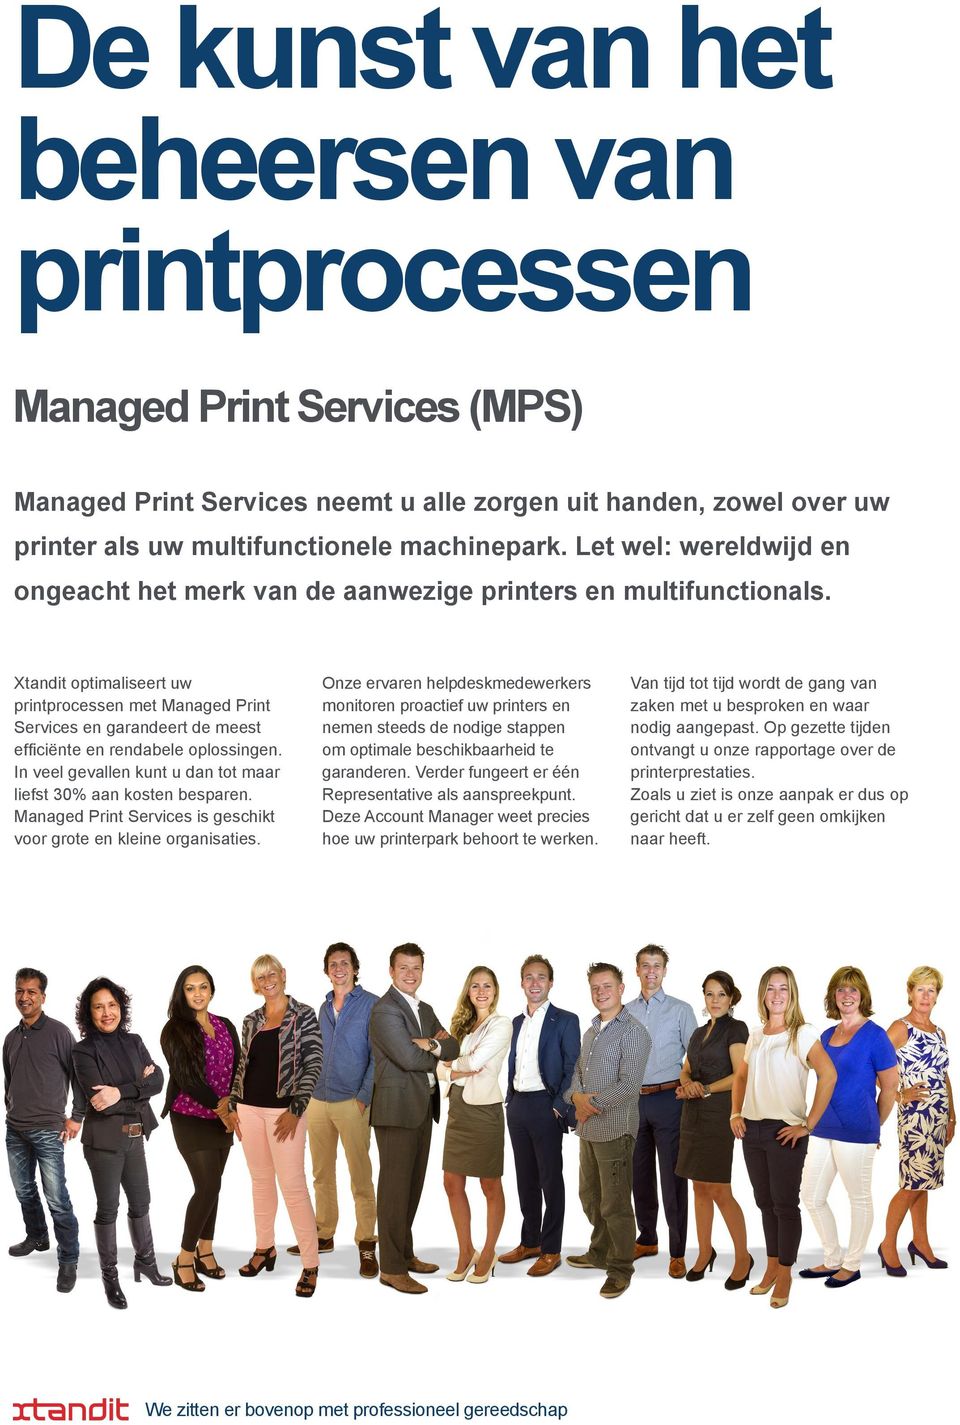 Xtandit optimaliseert uw printprocessen met Managed Print Services en garandeert de meest efficiënte en rendabele oplossingen. In veel gevallen kunt u dan tot maar liefst 30% aan kosten besparen.